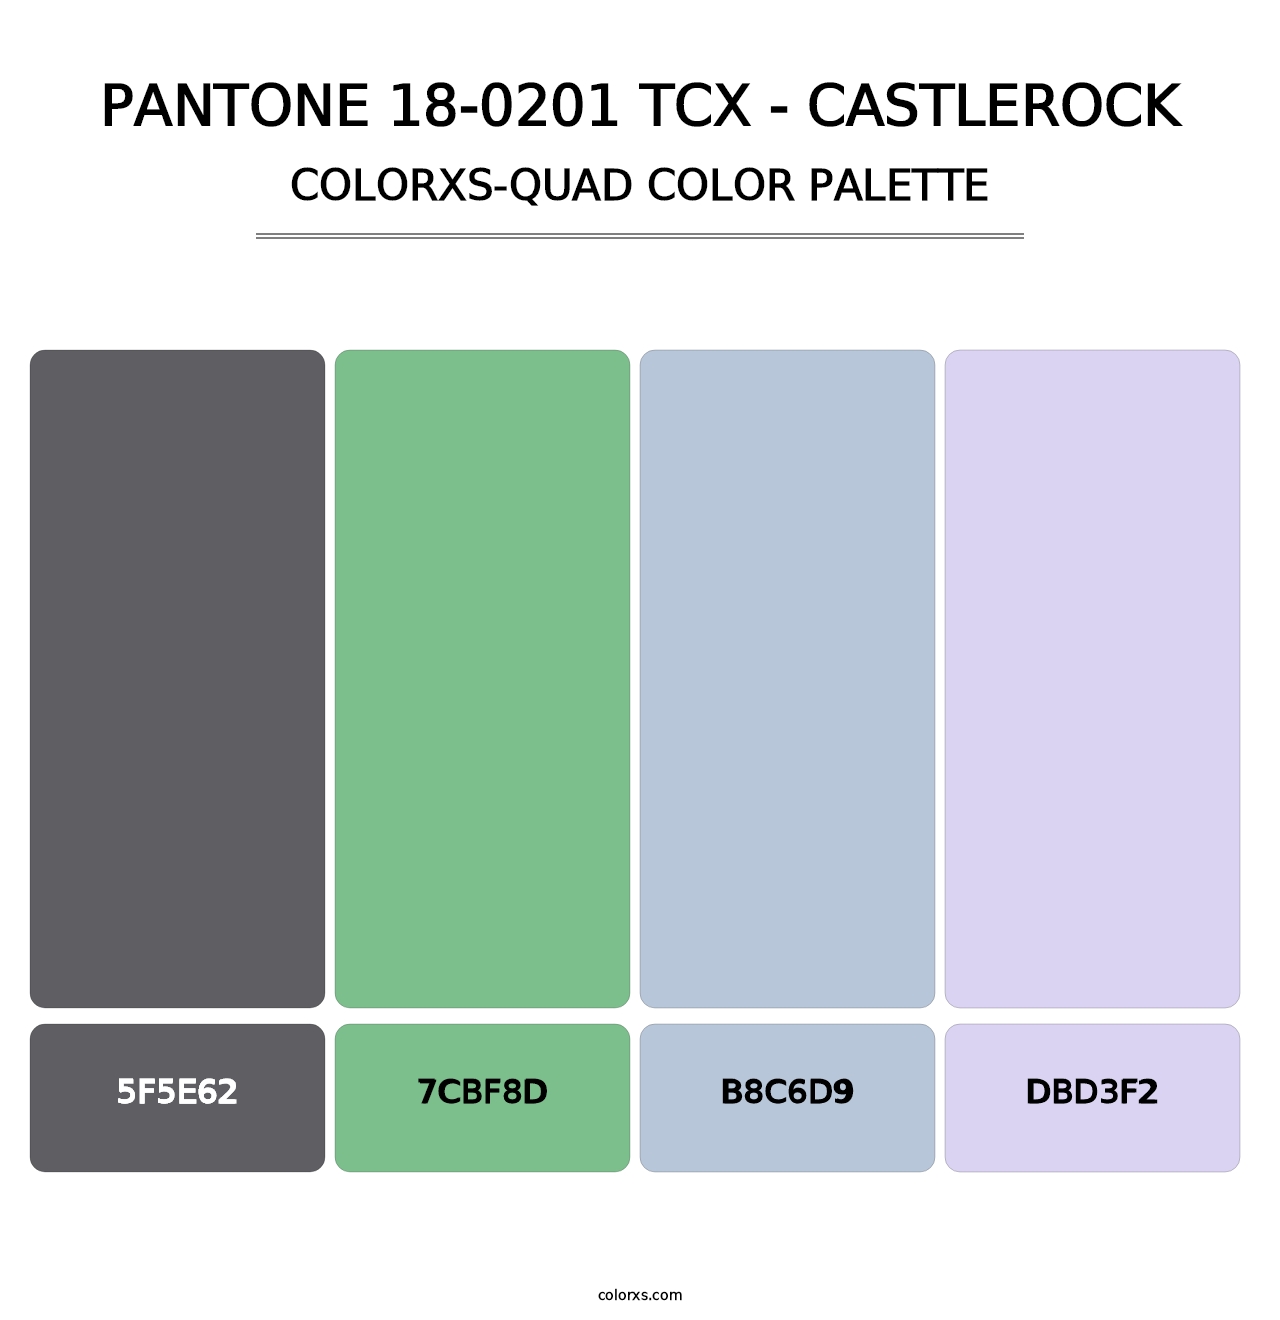 PANTONE 18-0201 TCX - Castlerock - Colorxs Quad Palette